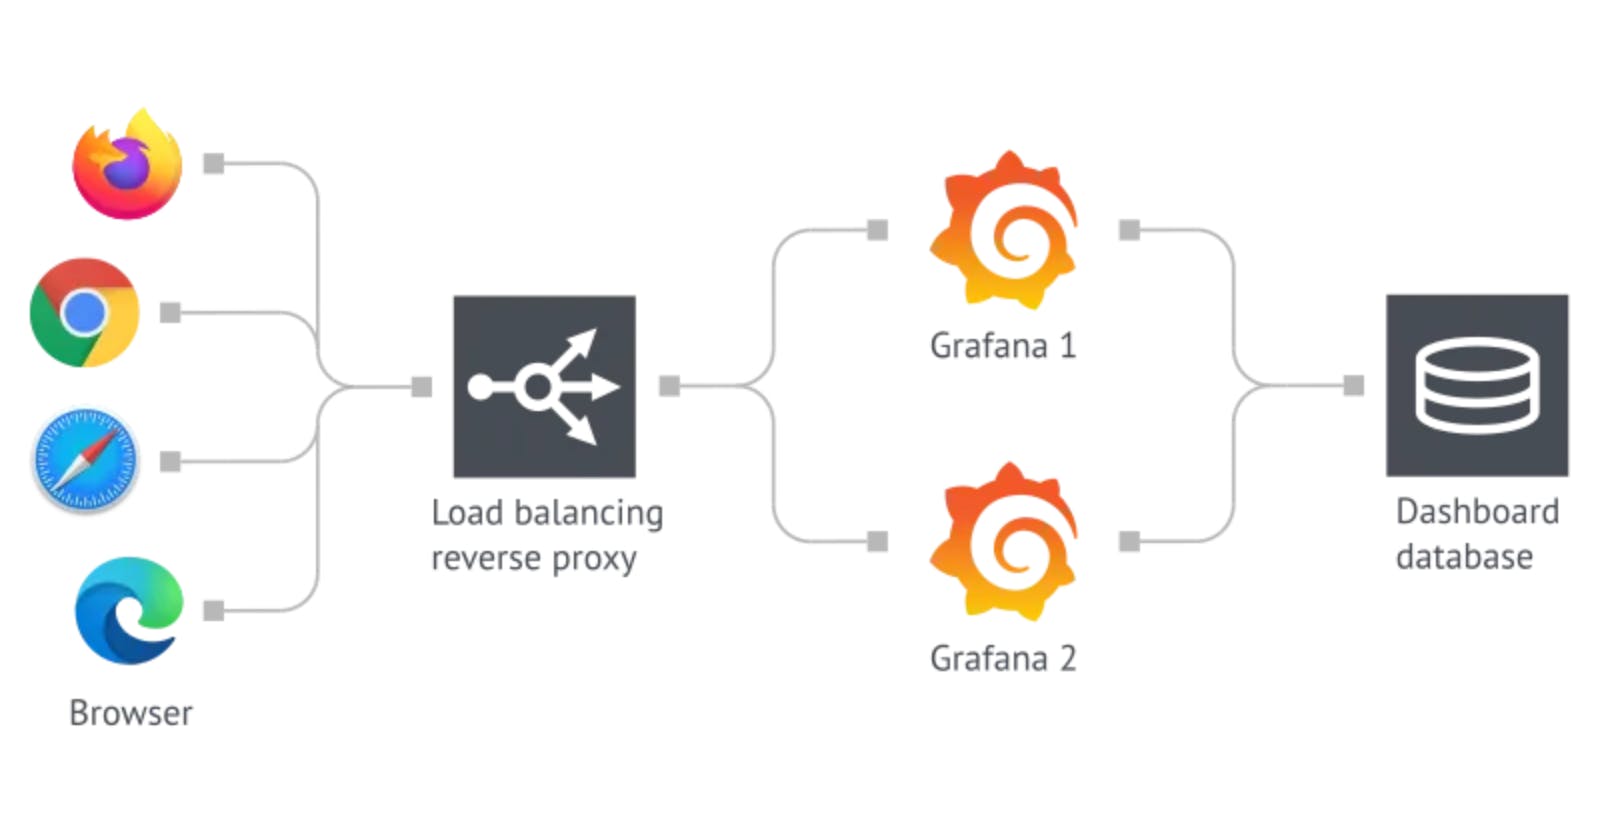 How to configure HA setup for Grafana using docker compose